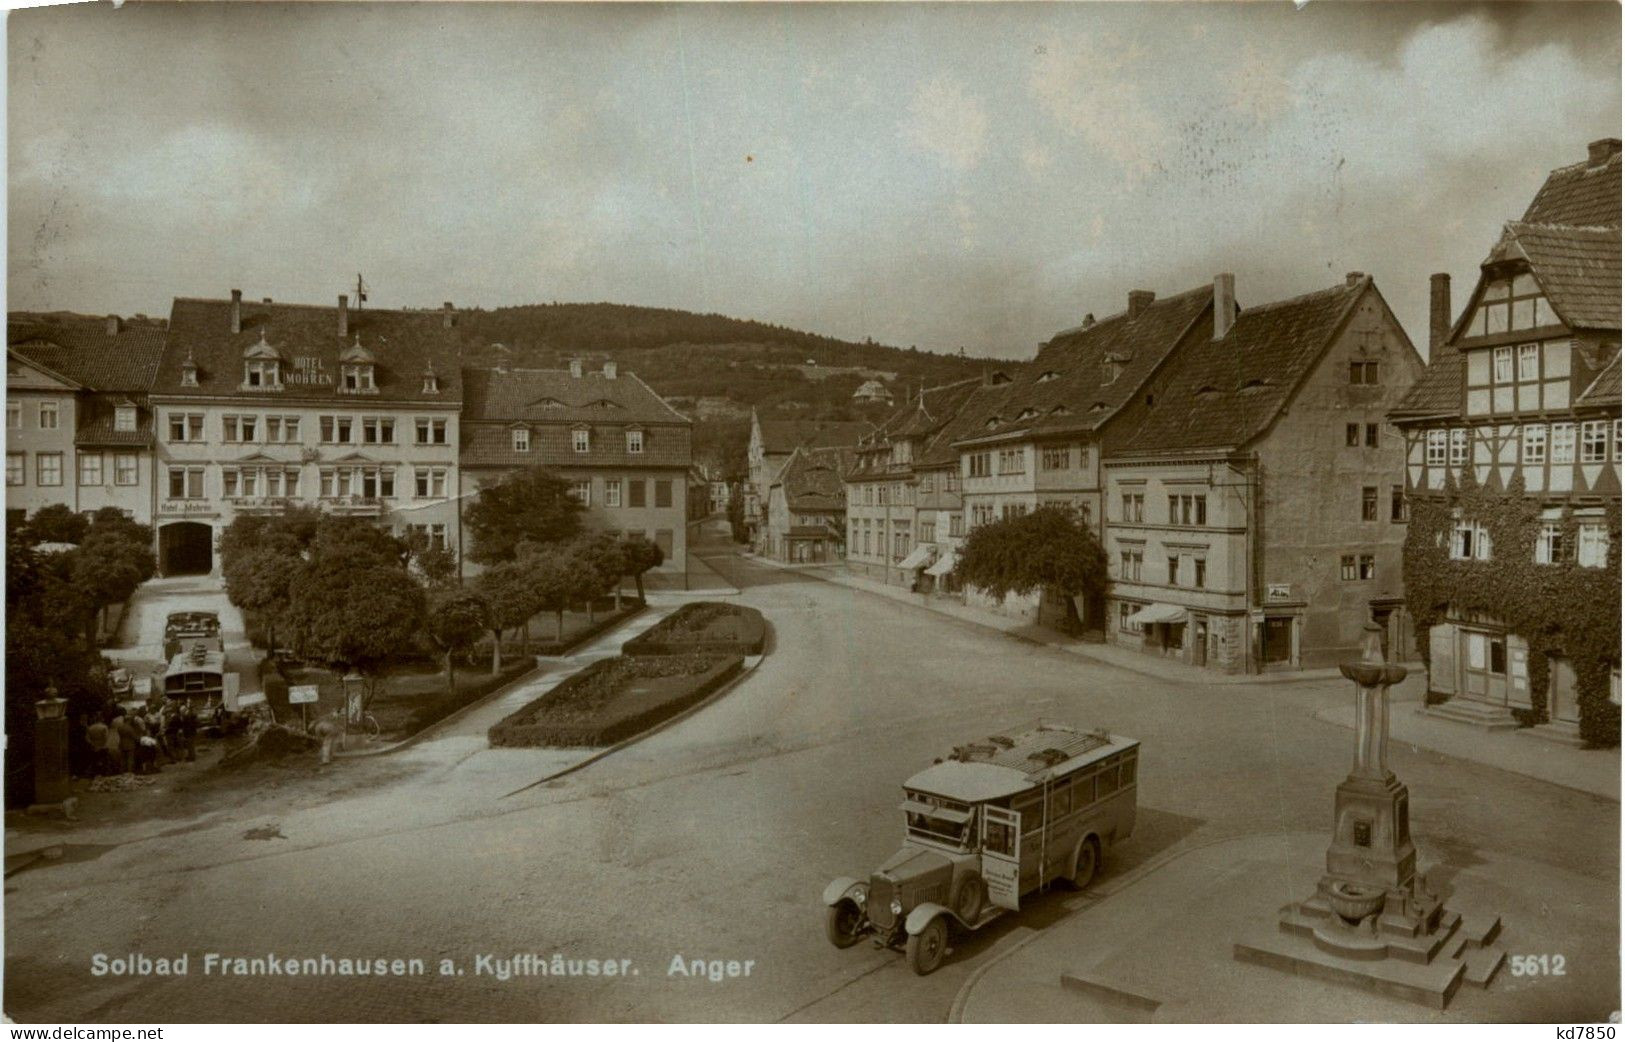 Kyffhäuser - Solbad Frankenhausen - Anger - Kyffhaeuser